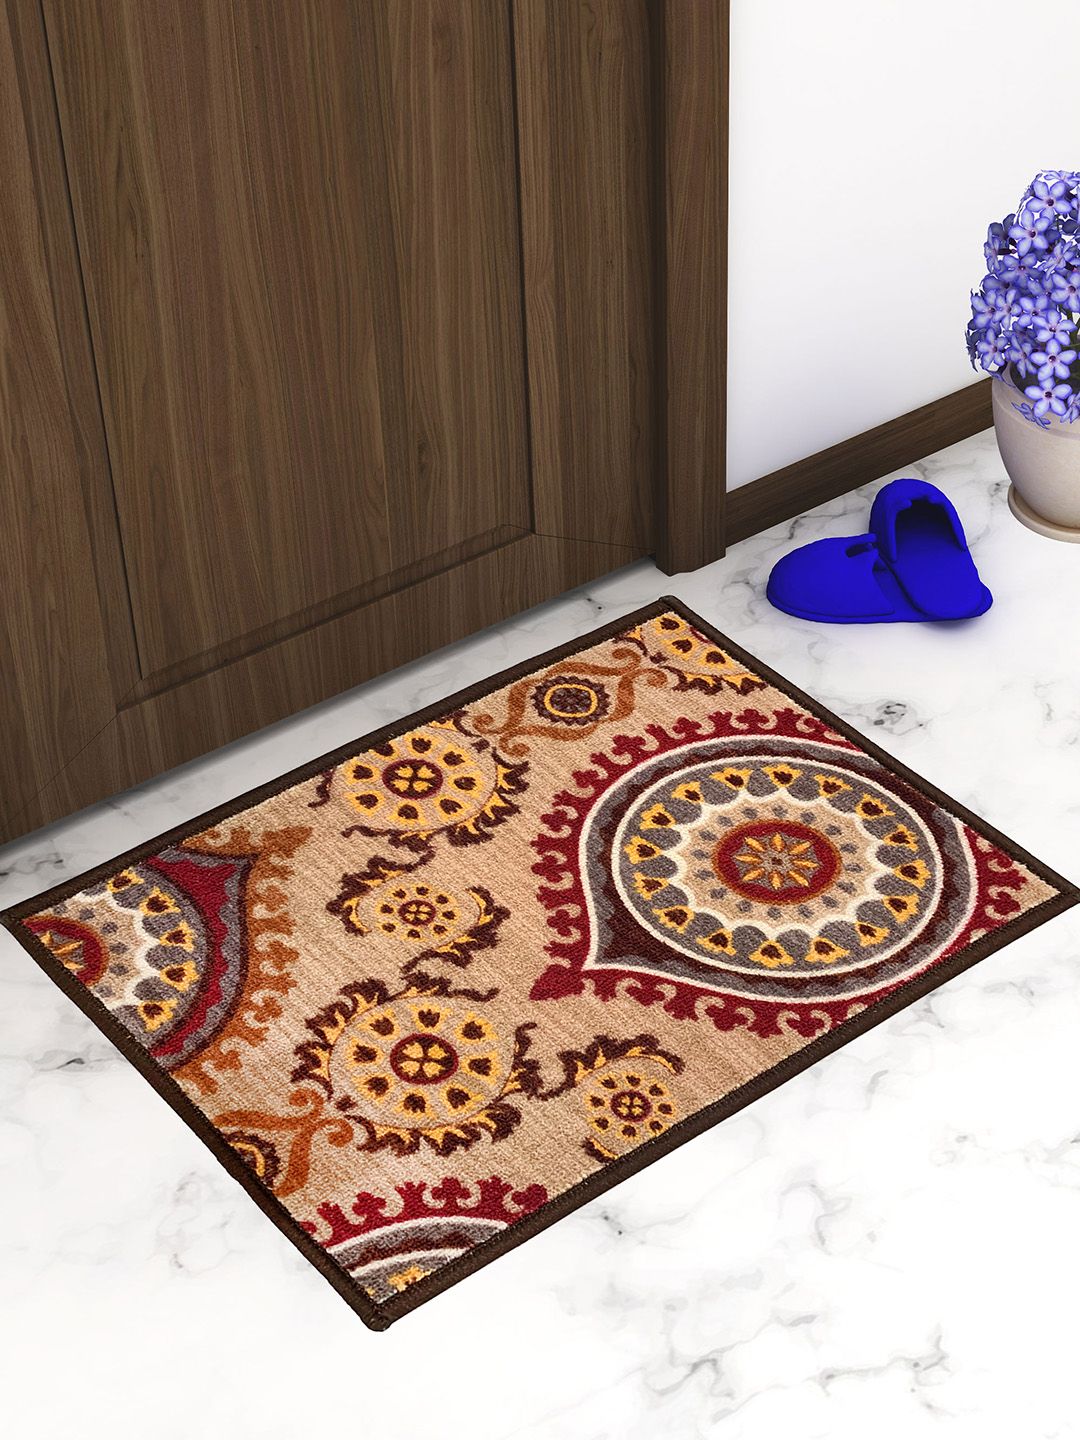 Athom Trendz Beige & Maroon Printed Premium Anti-slip Doormat Price in India